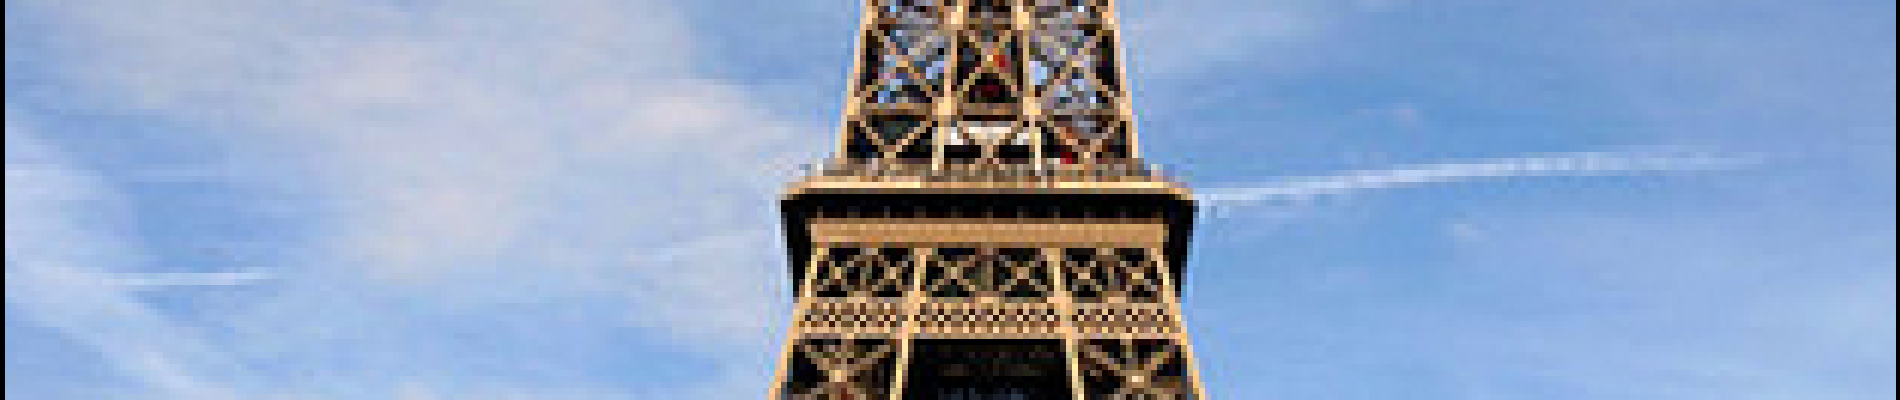 Point of interest Paris - Tour Eiffel - Photo